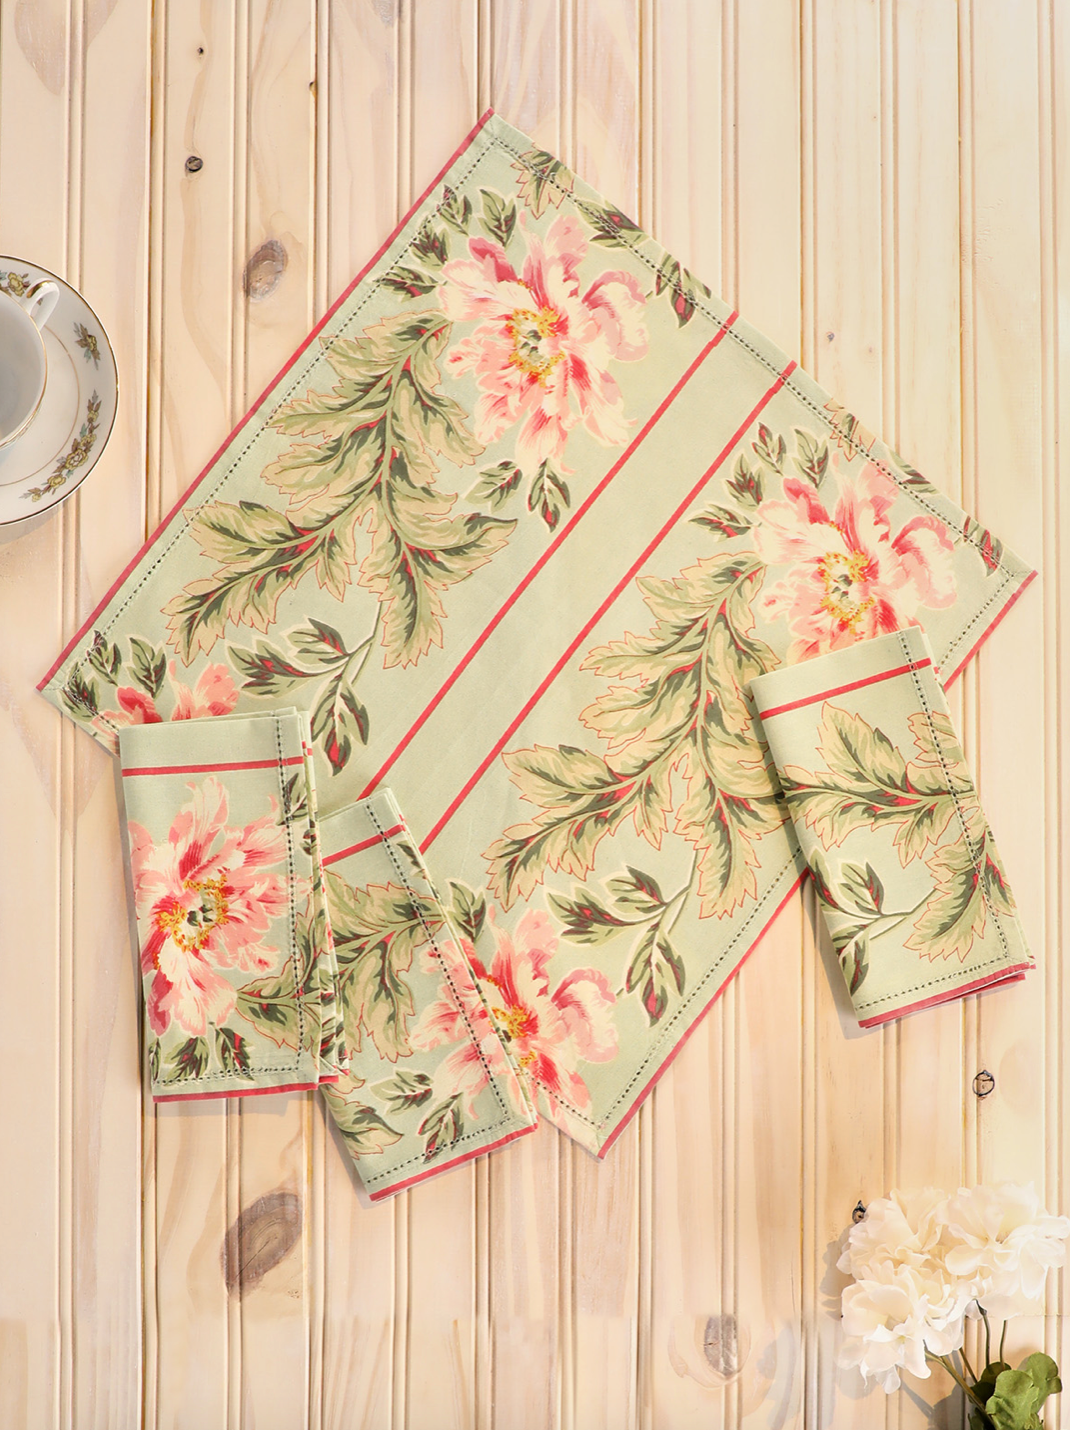 April Cornell English Garden outdoor tablecloths – Pandora's